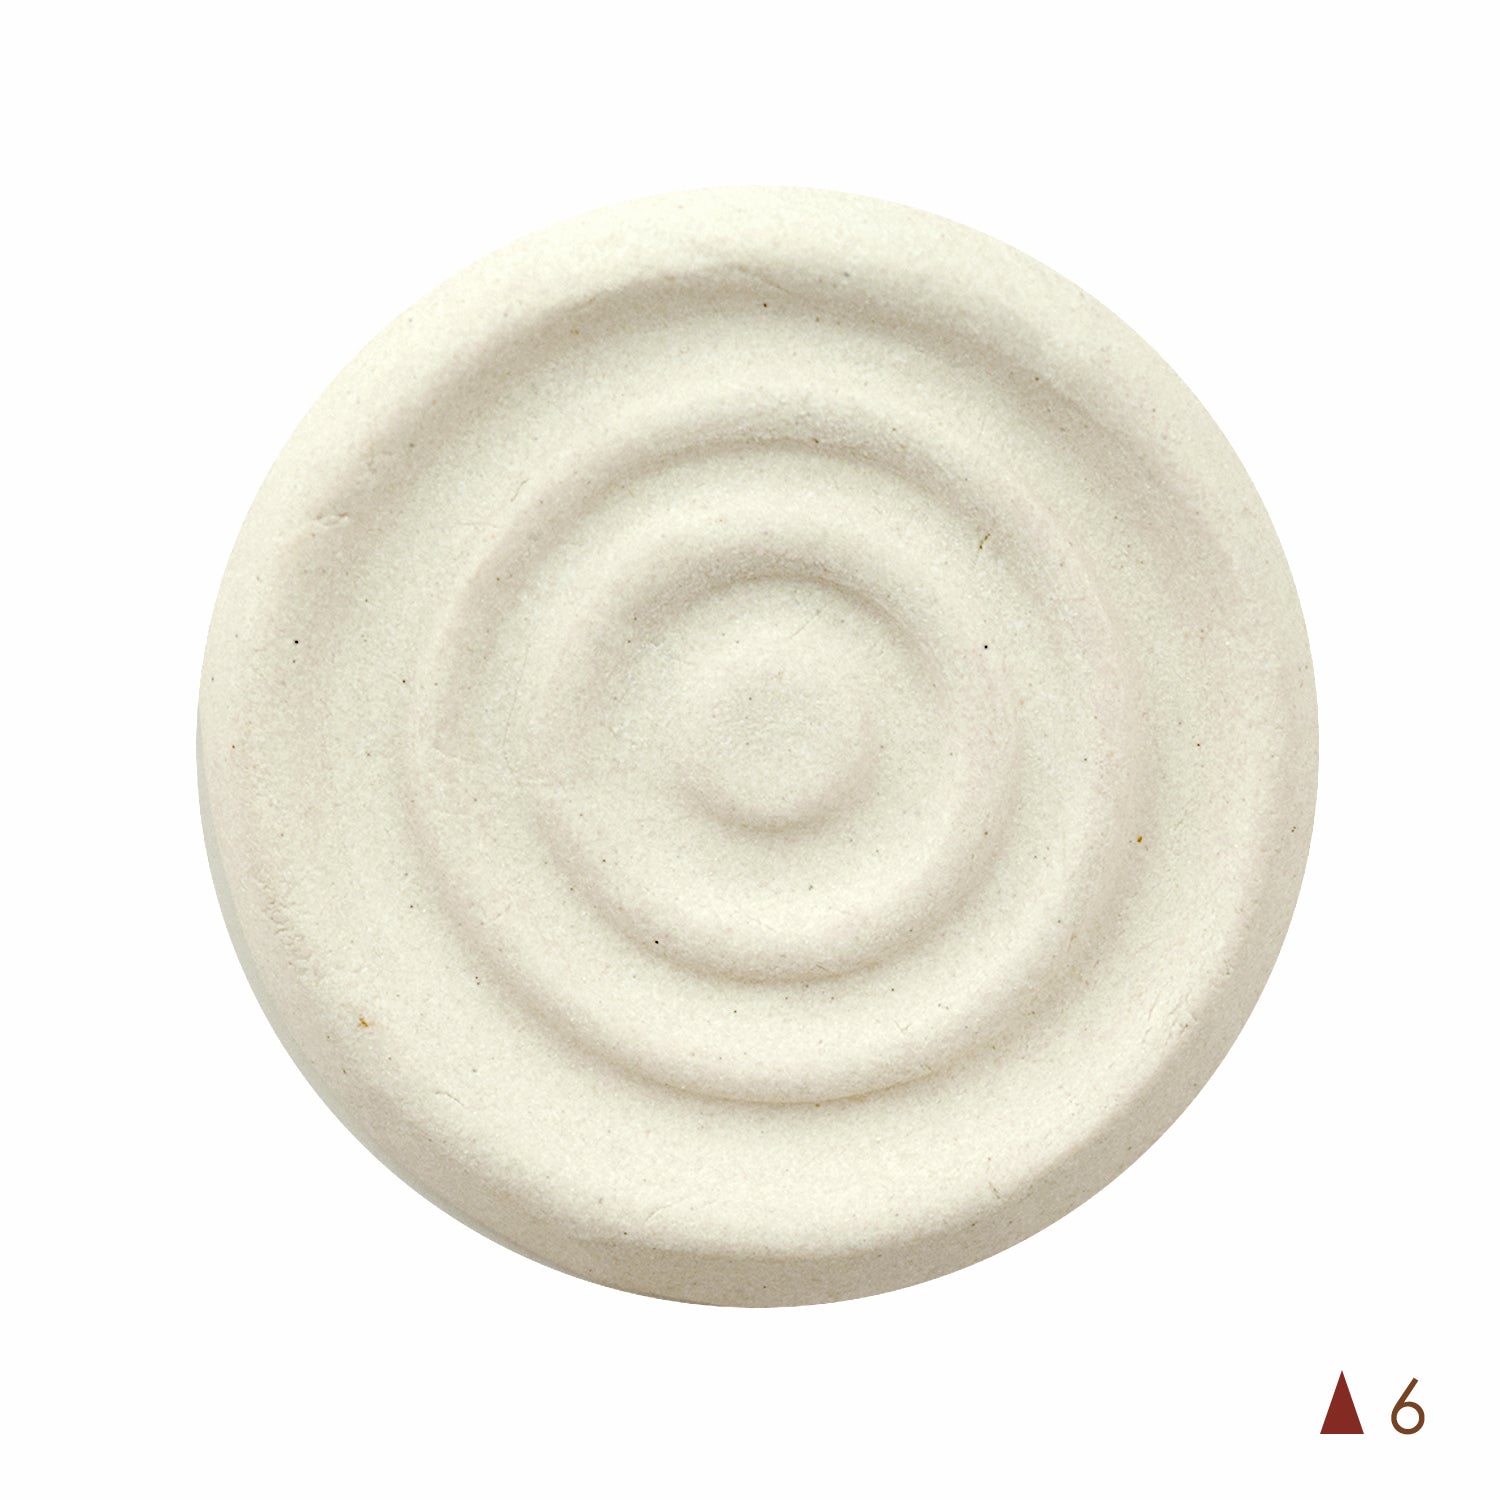  Soft Clay (6 Set, White)